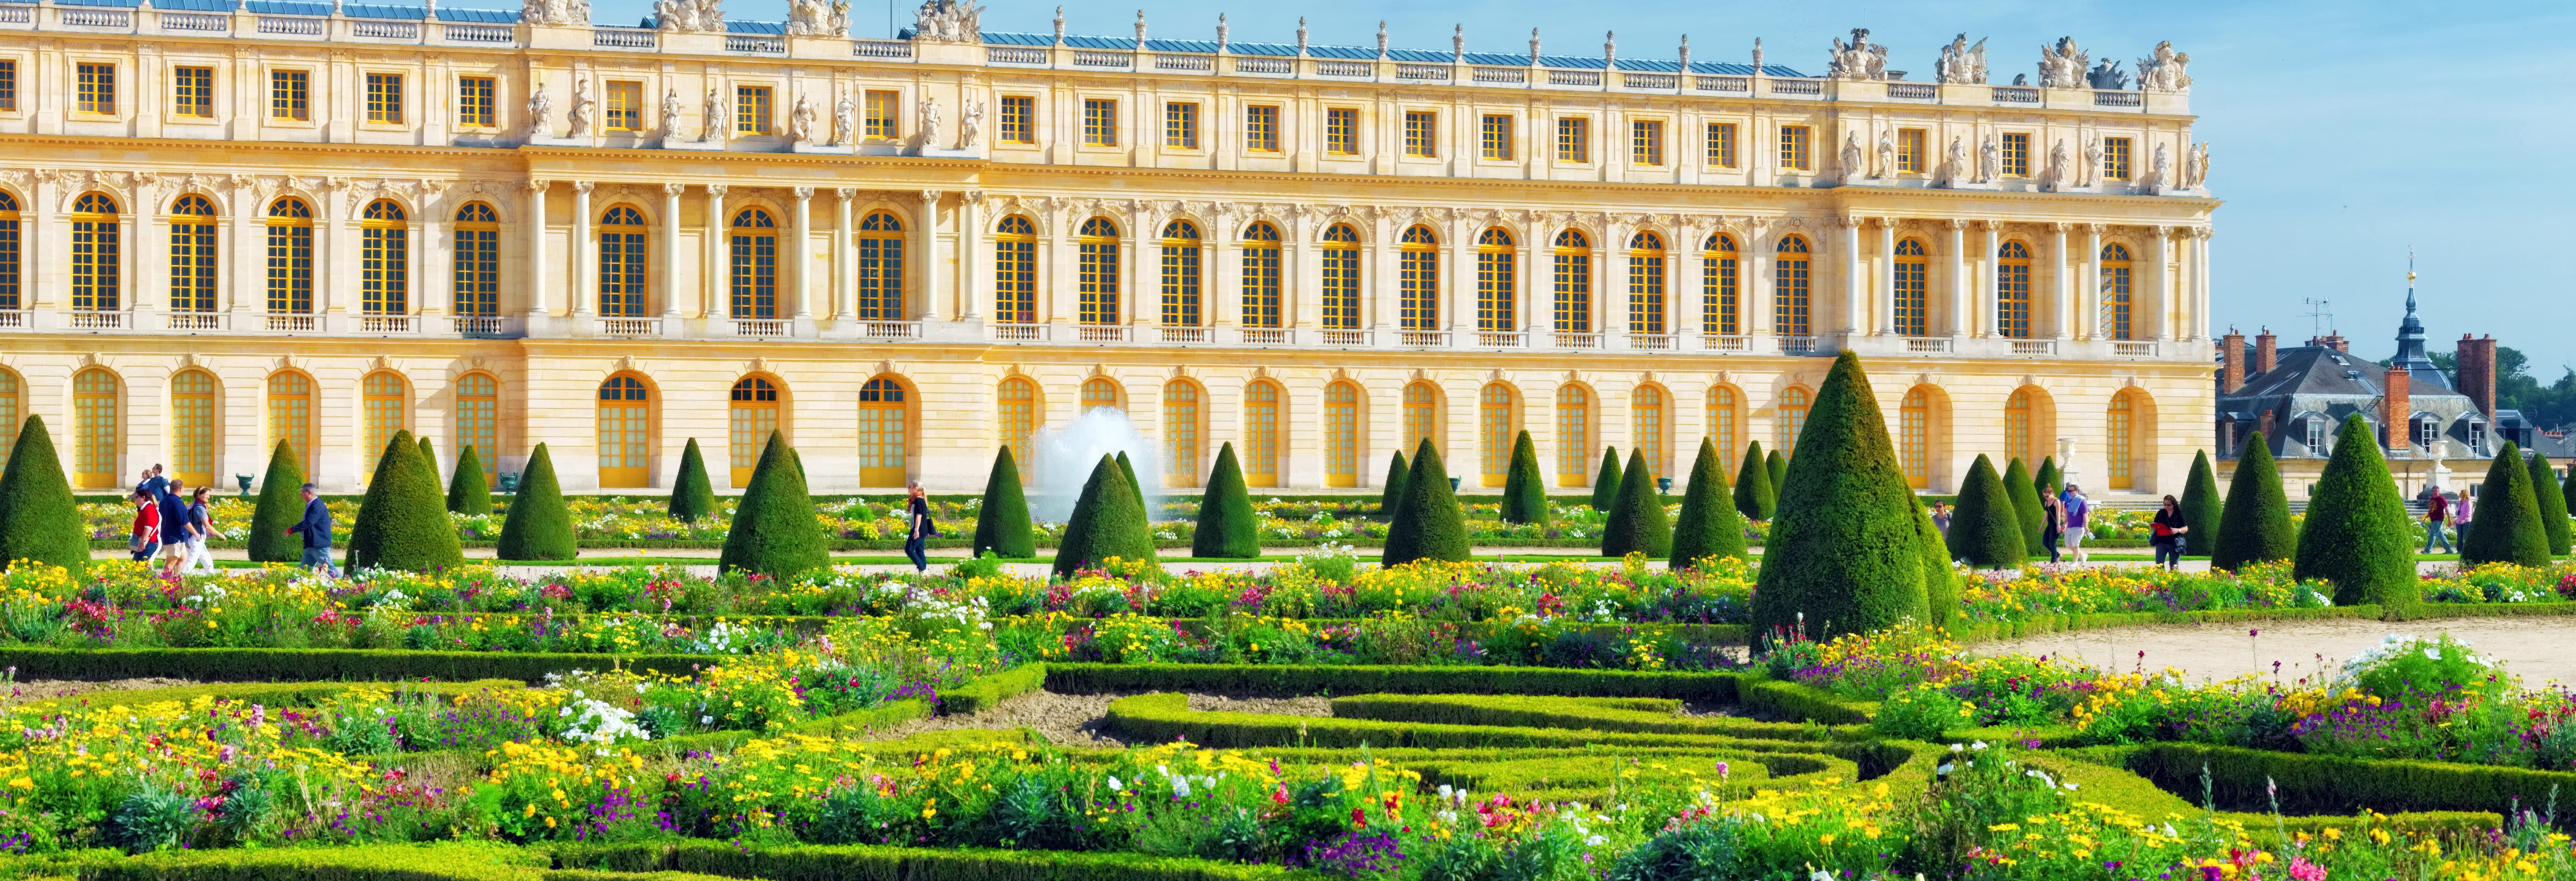 Visite guidée du château de Versailles d'une journée - accès réservé - transport inclus depuis Paris